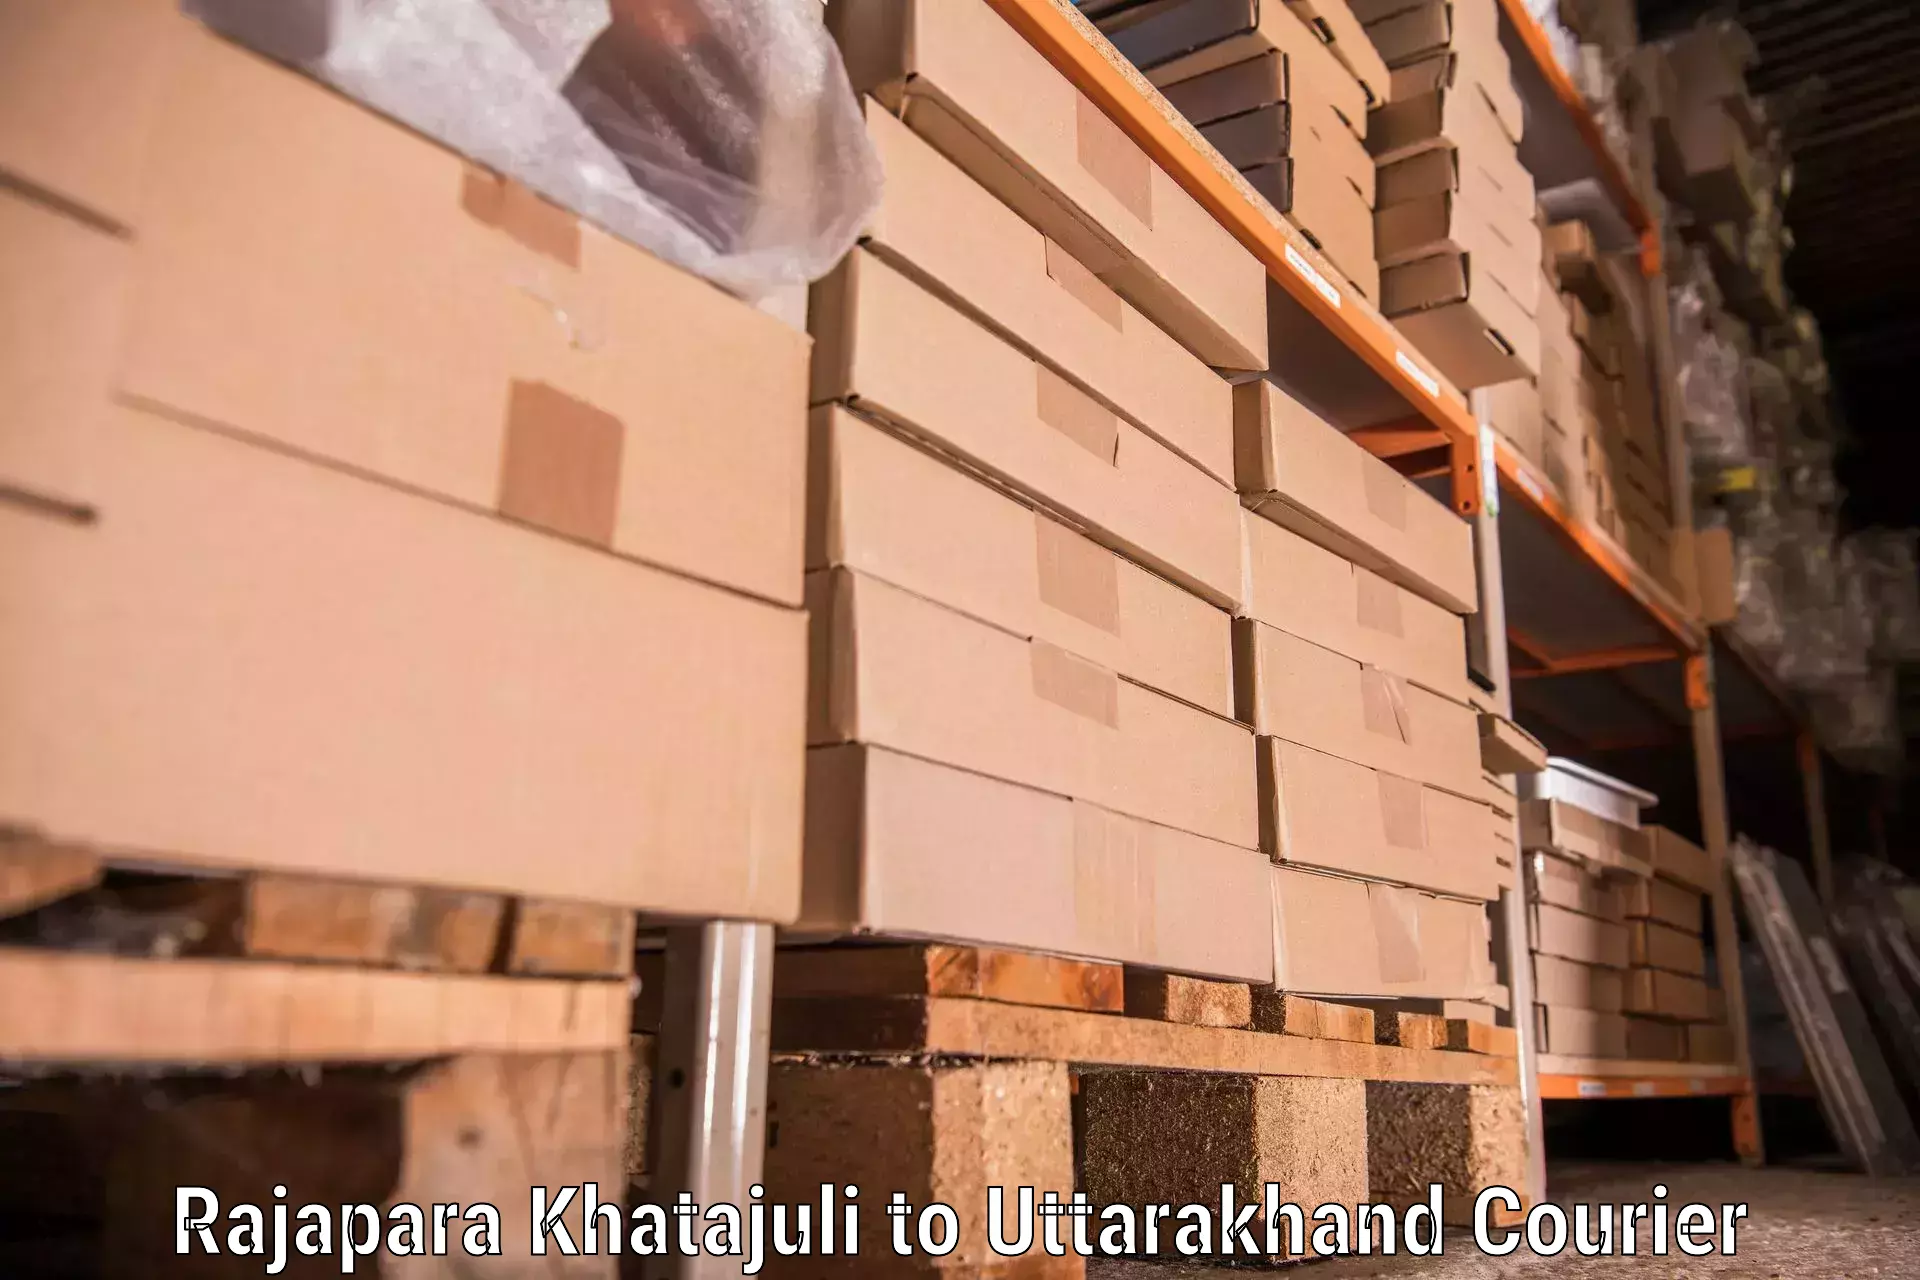 Efficient packing and moving Rajapara Khatajuli to Uttarakhand